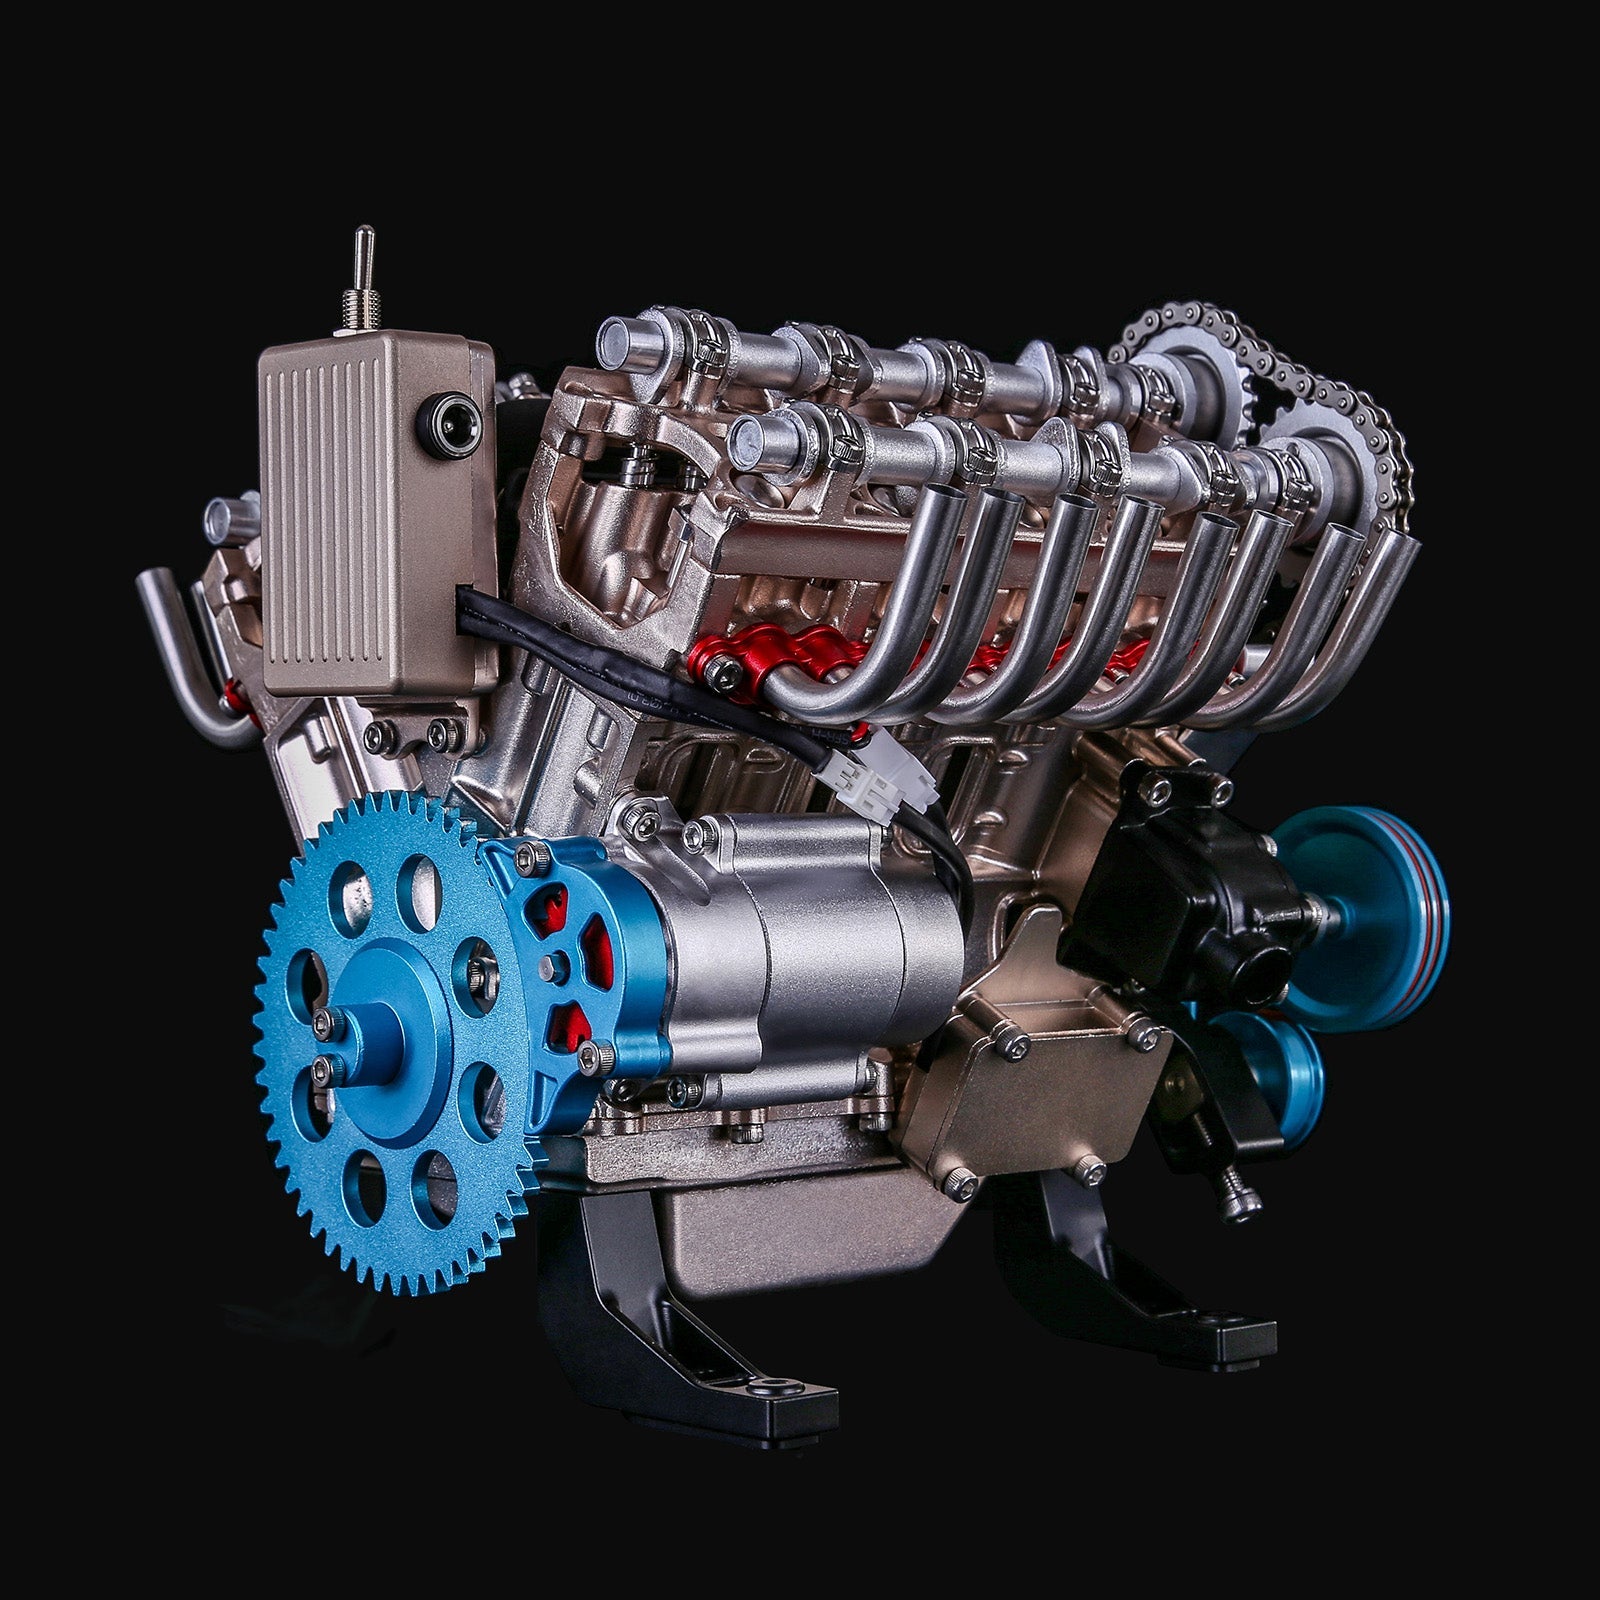 TECHING V8 Engine Model Kit